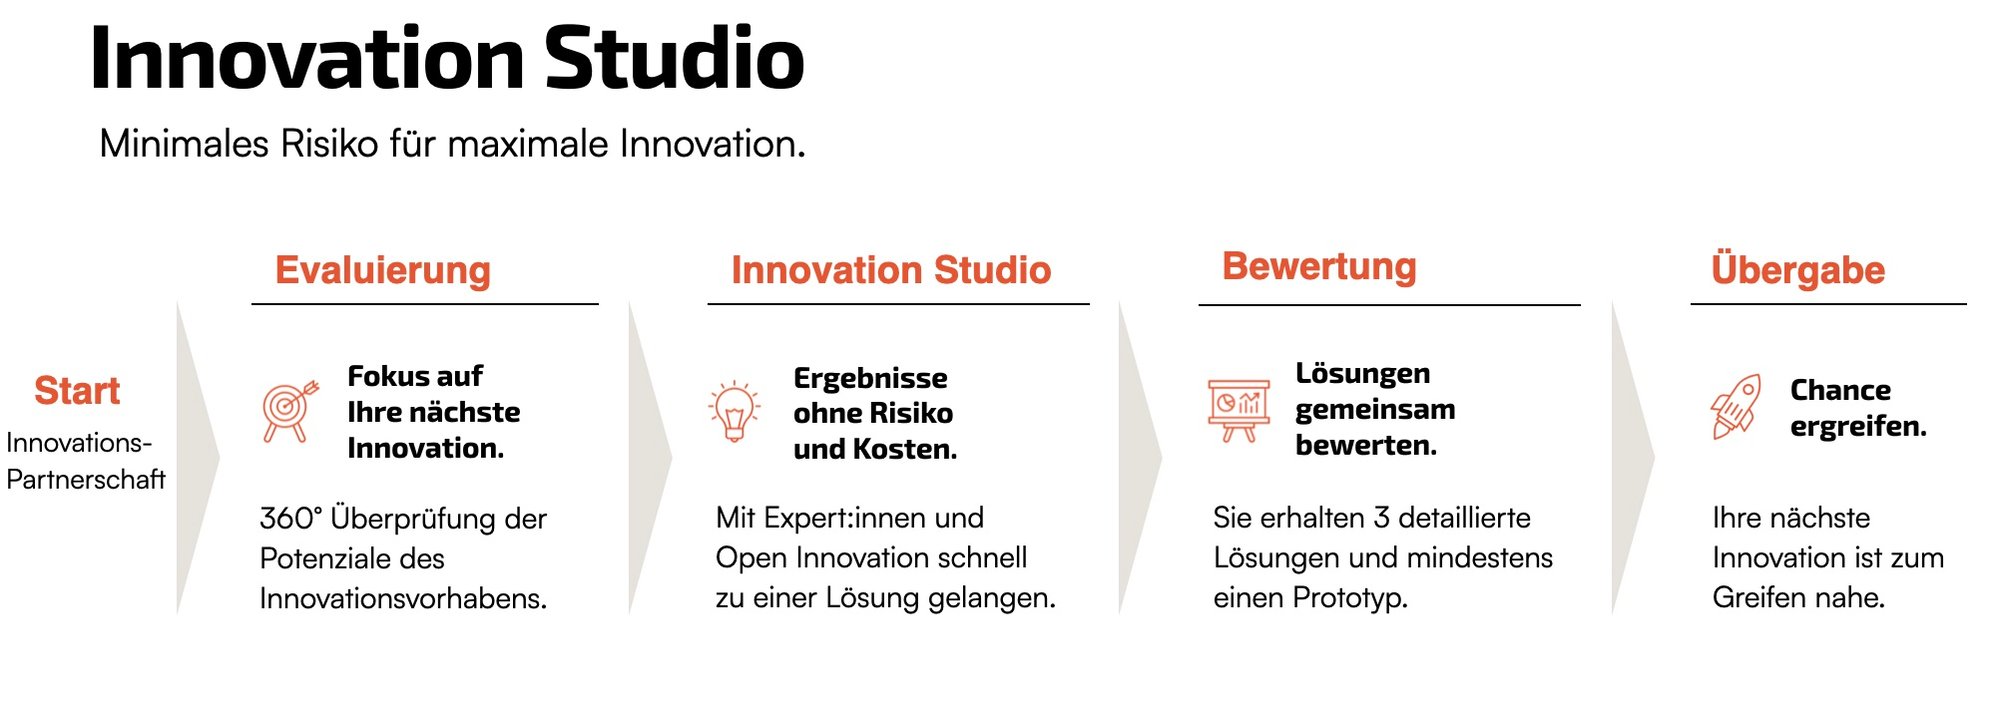 4 Prozessschritte des Innovation Studios: Evaluierung, Innovation Studio, Bewertung und Übergabe